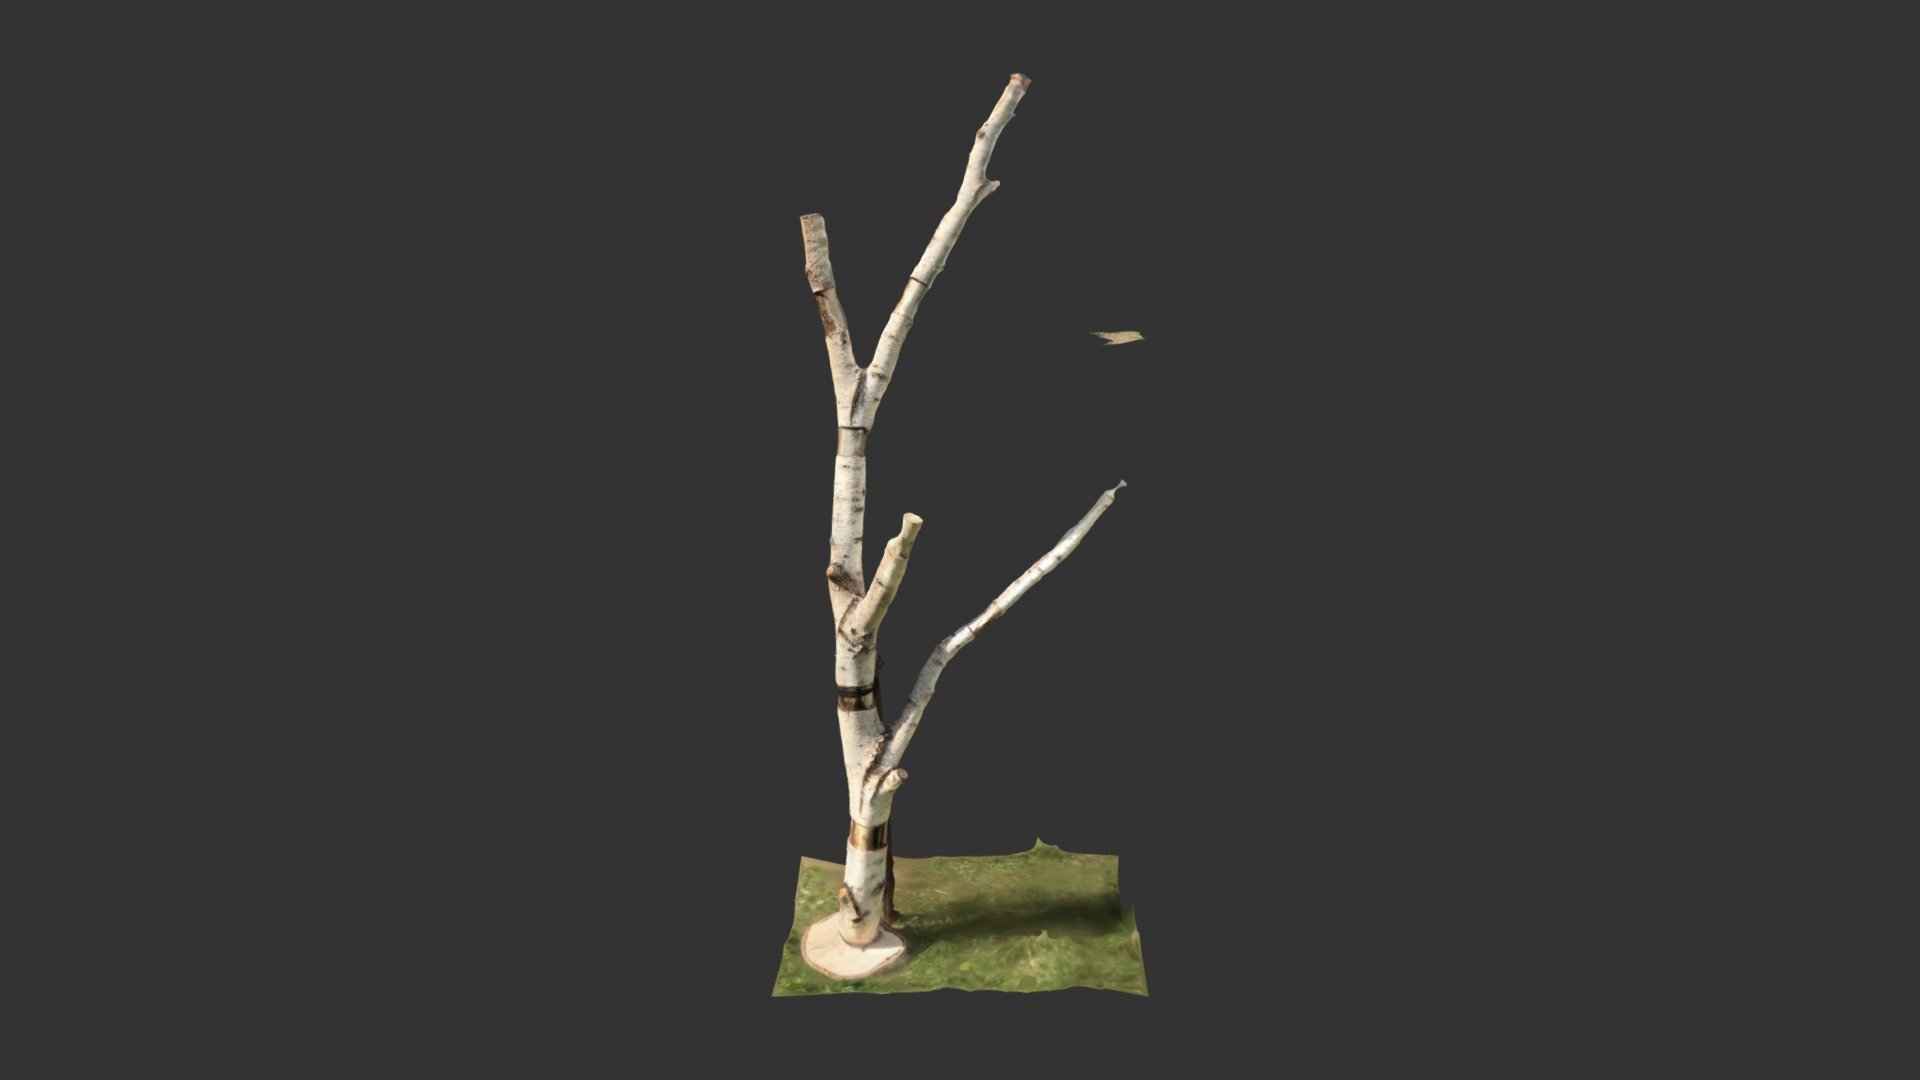 Baum 1